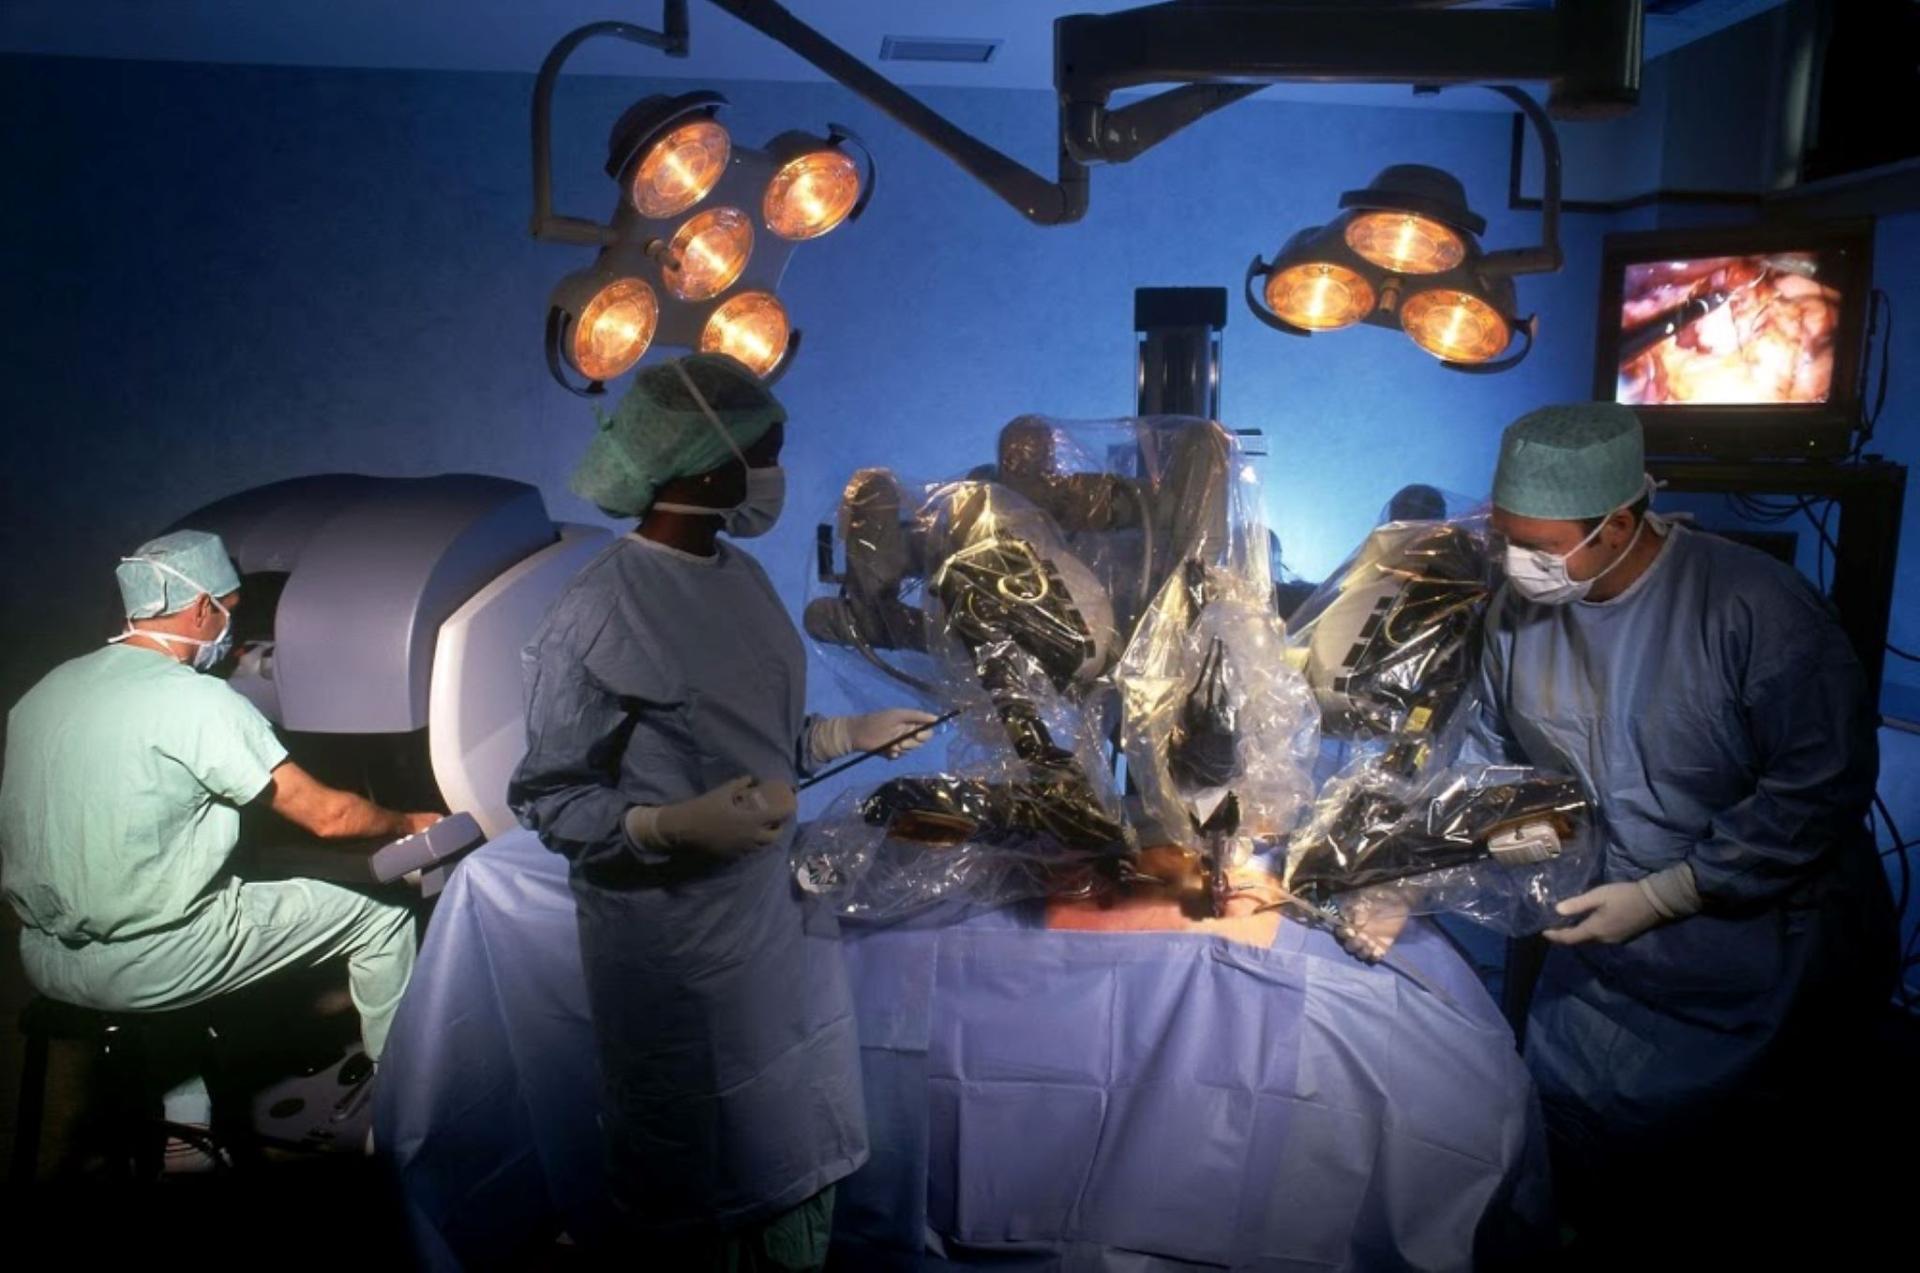 Σύστημα Ρομποτικής Χειρουργικής